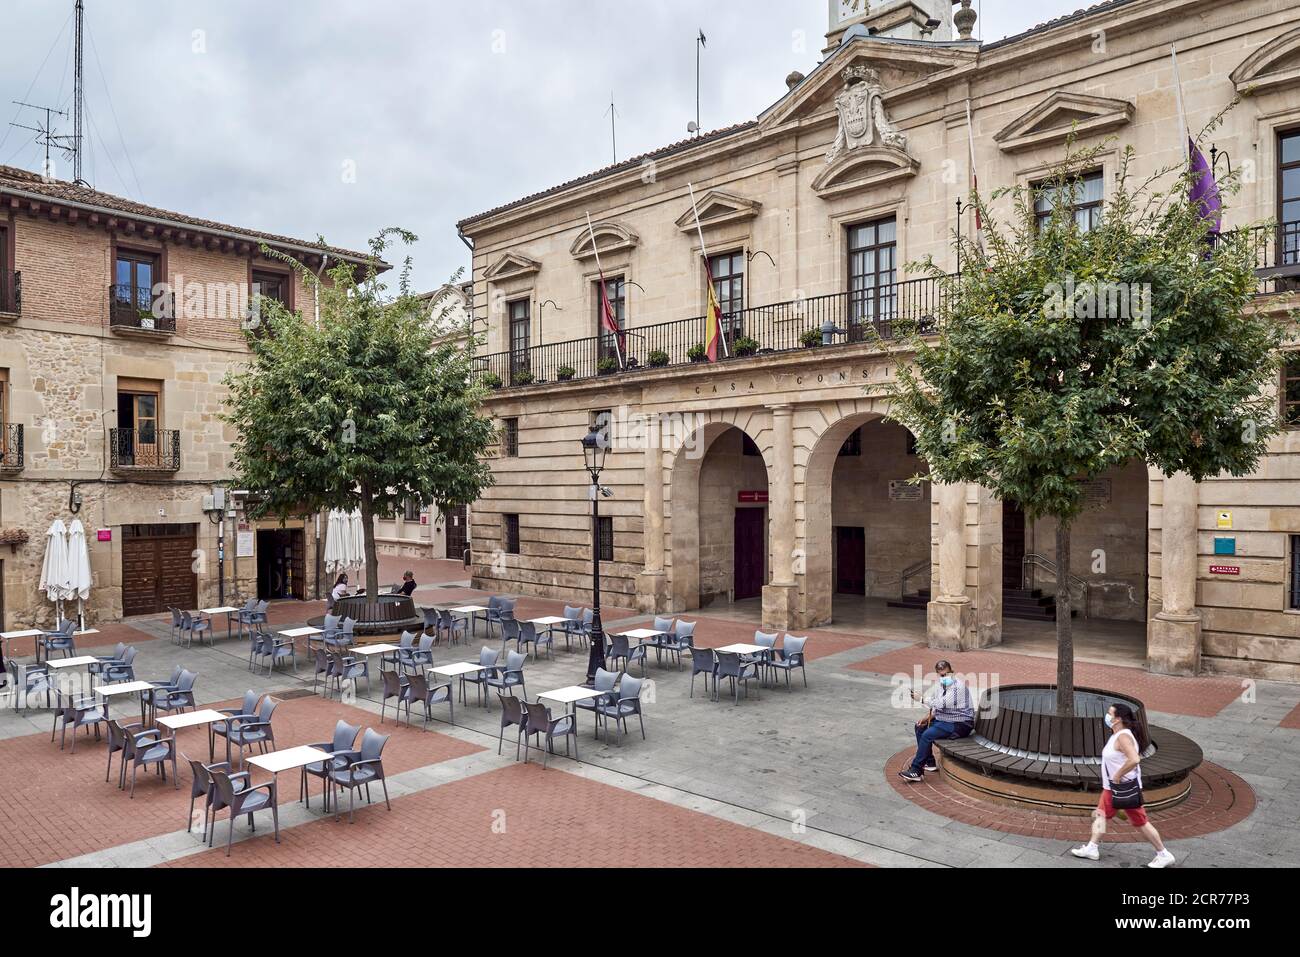 Hôtel de ville de Miranda de Ebro, bâtiment néoclassique. Situé sur la Plaza de España, Burgos, Castille et Leon, Espagne, Europe Banque D'Images